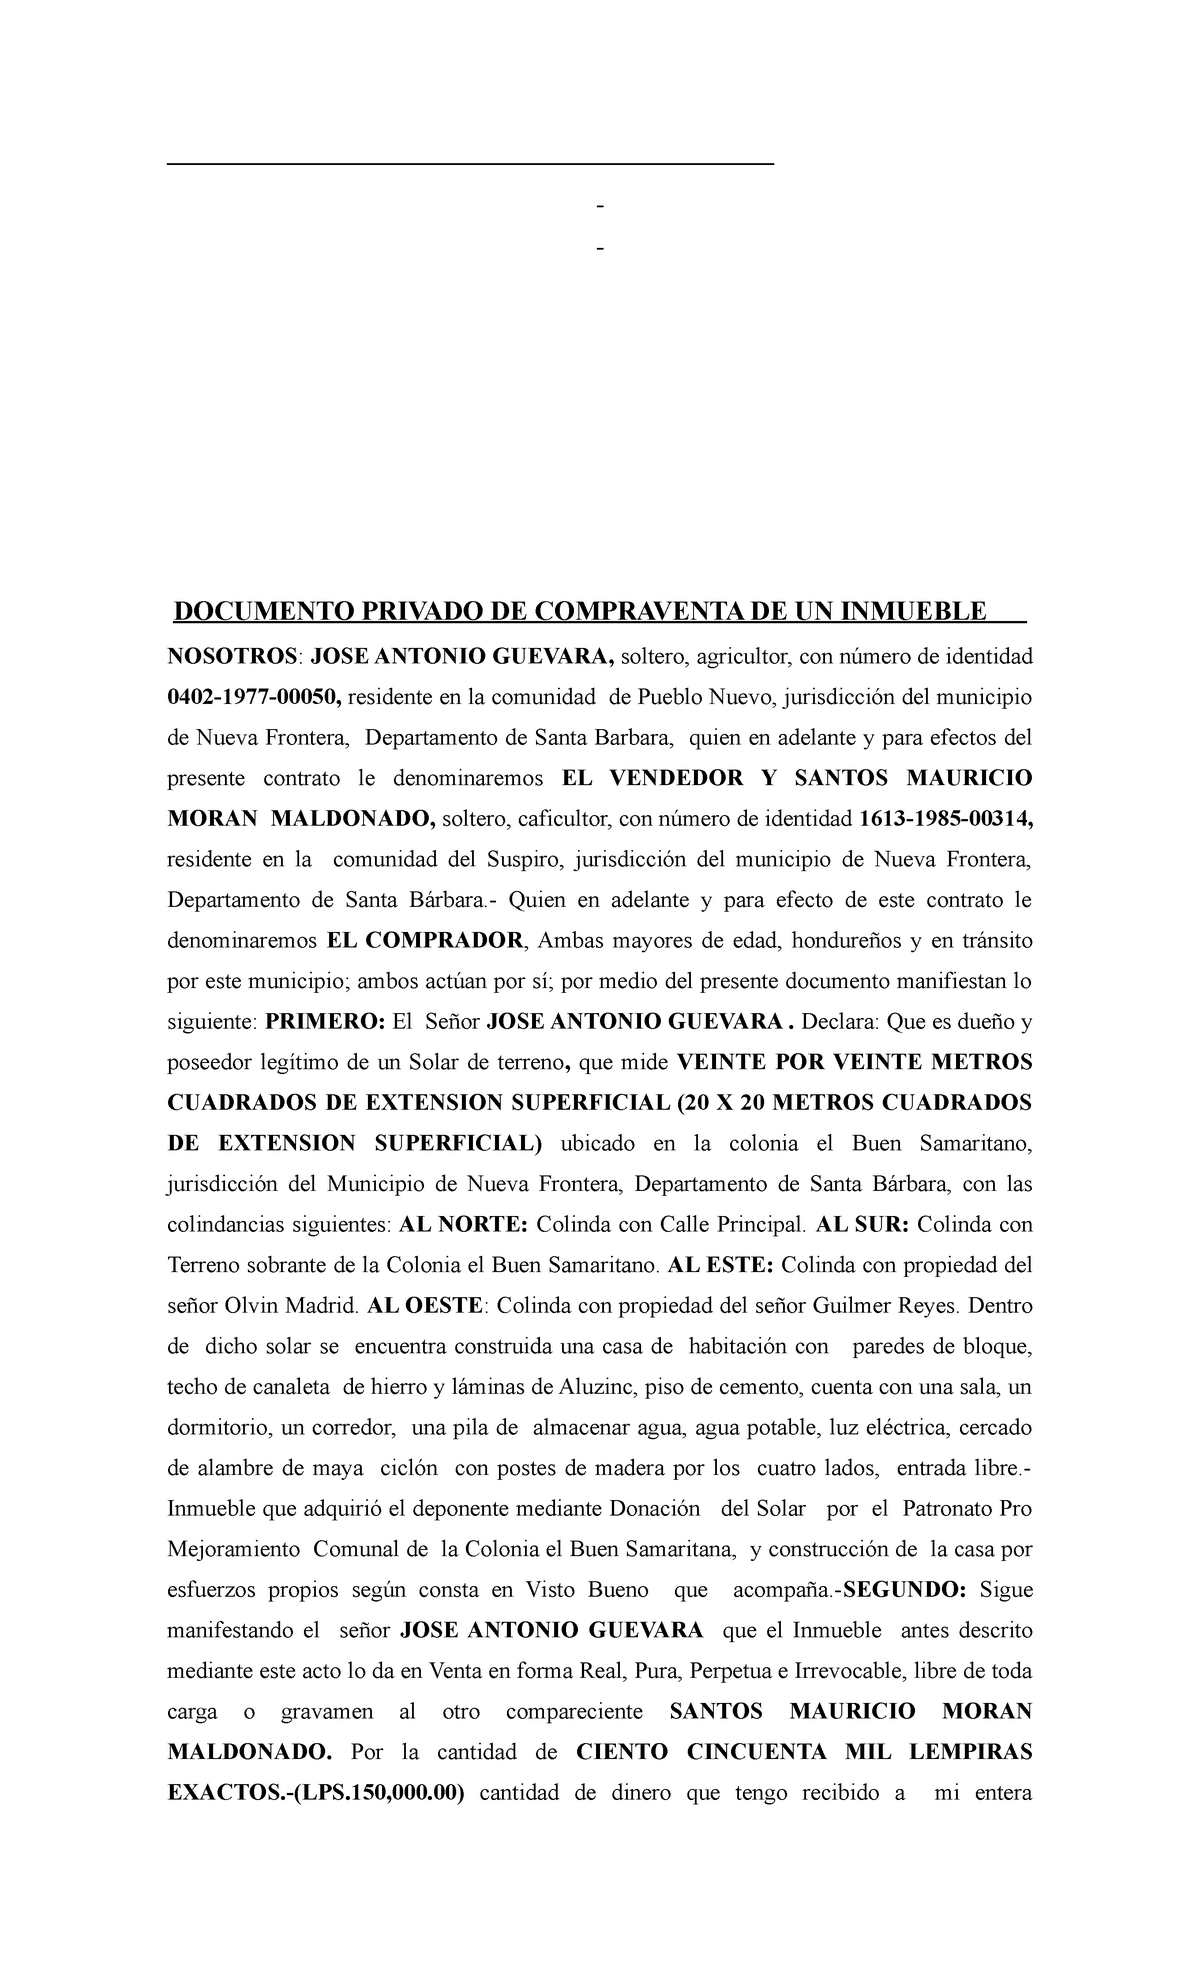 Documento De Compra Y Venta De Un Inmueble En El Area Notarial Documento Privado De 5698